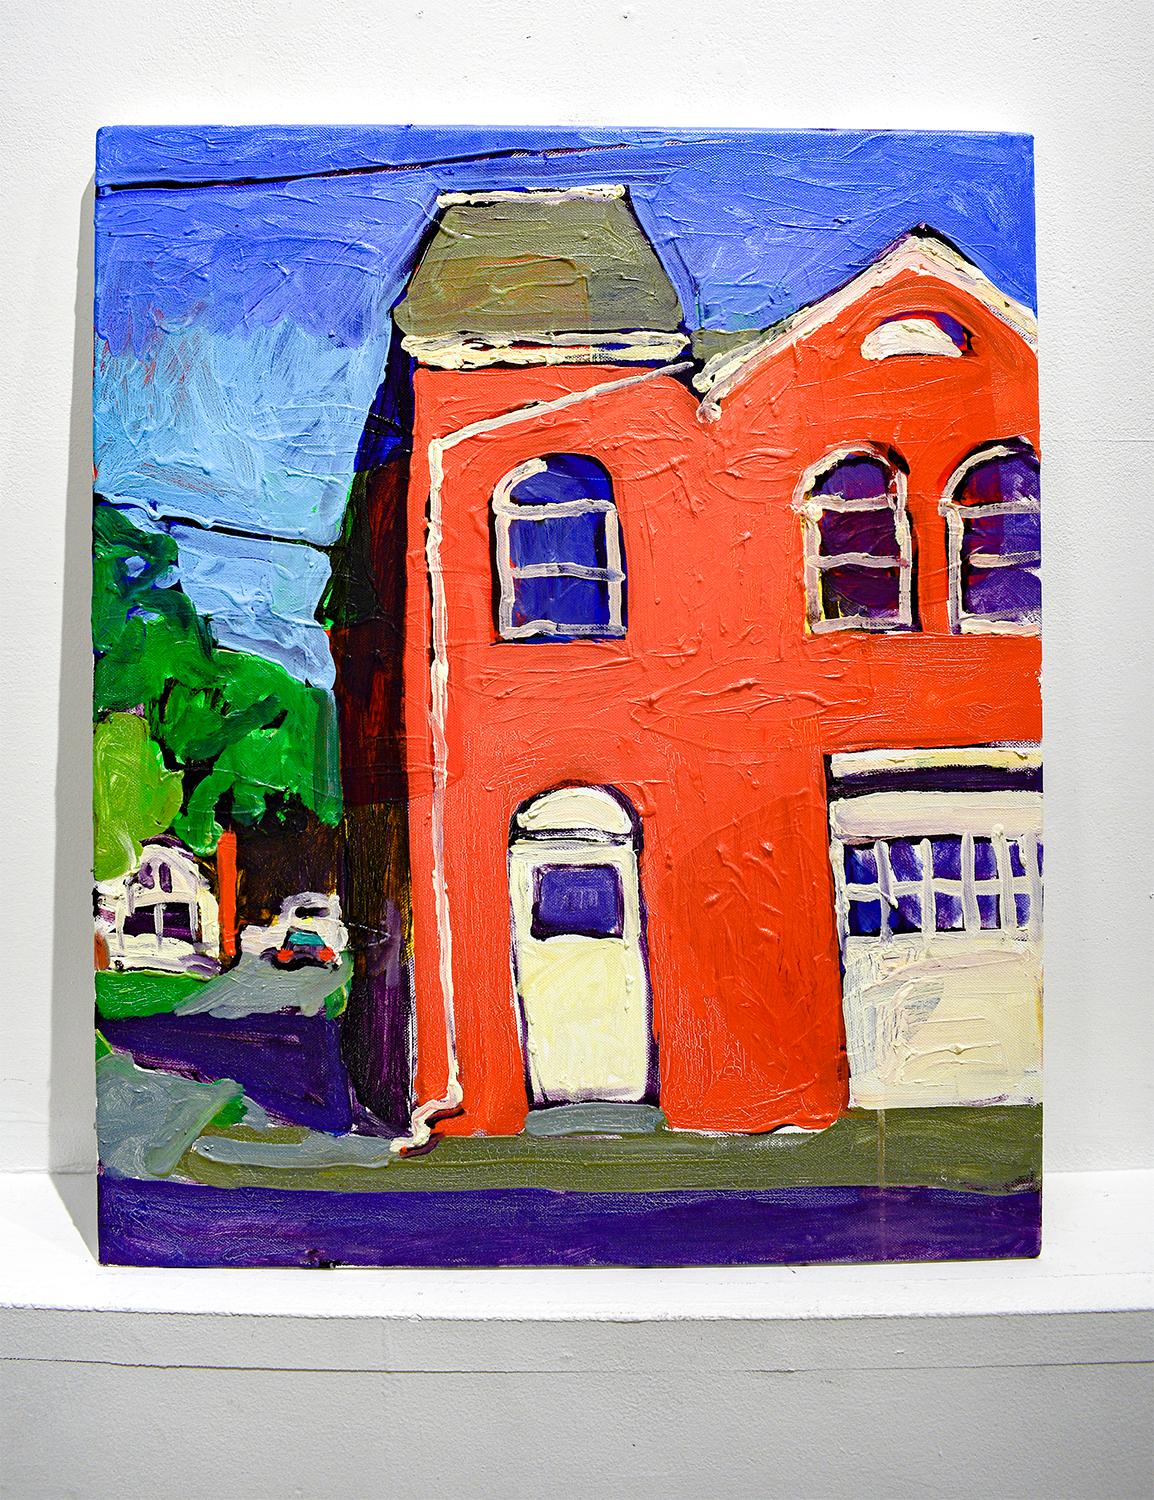 Macawamio Firehouse Athens, NY (peinture de paysage urbain de style fauviste sur toile) - Moderne Painting par Dan Rupe